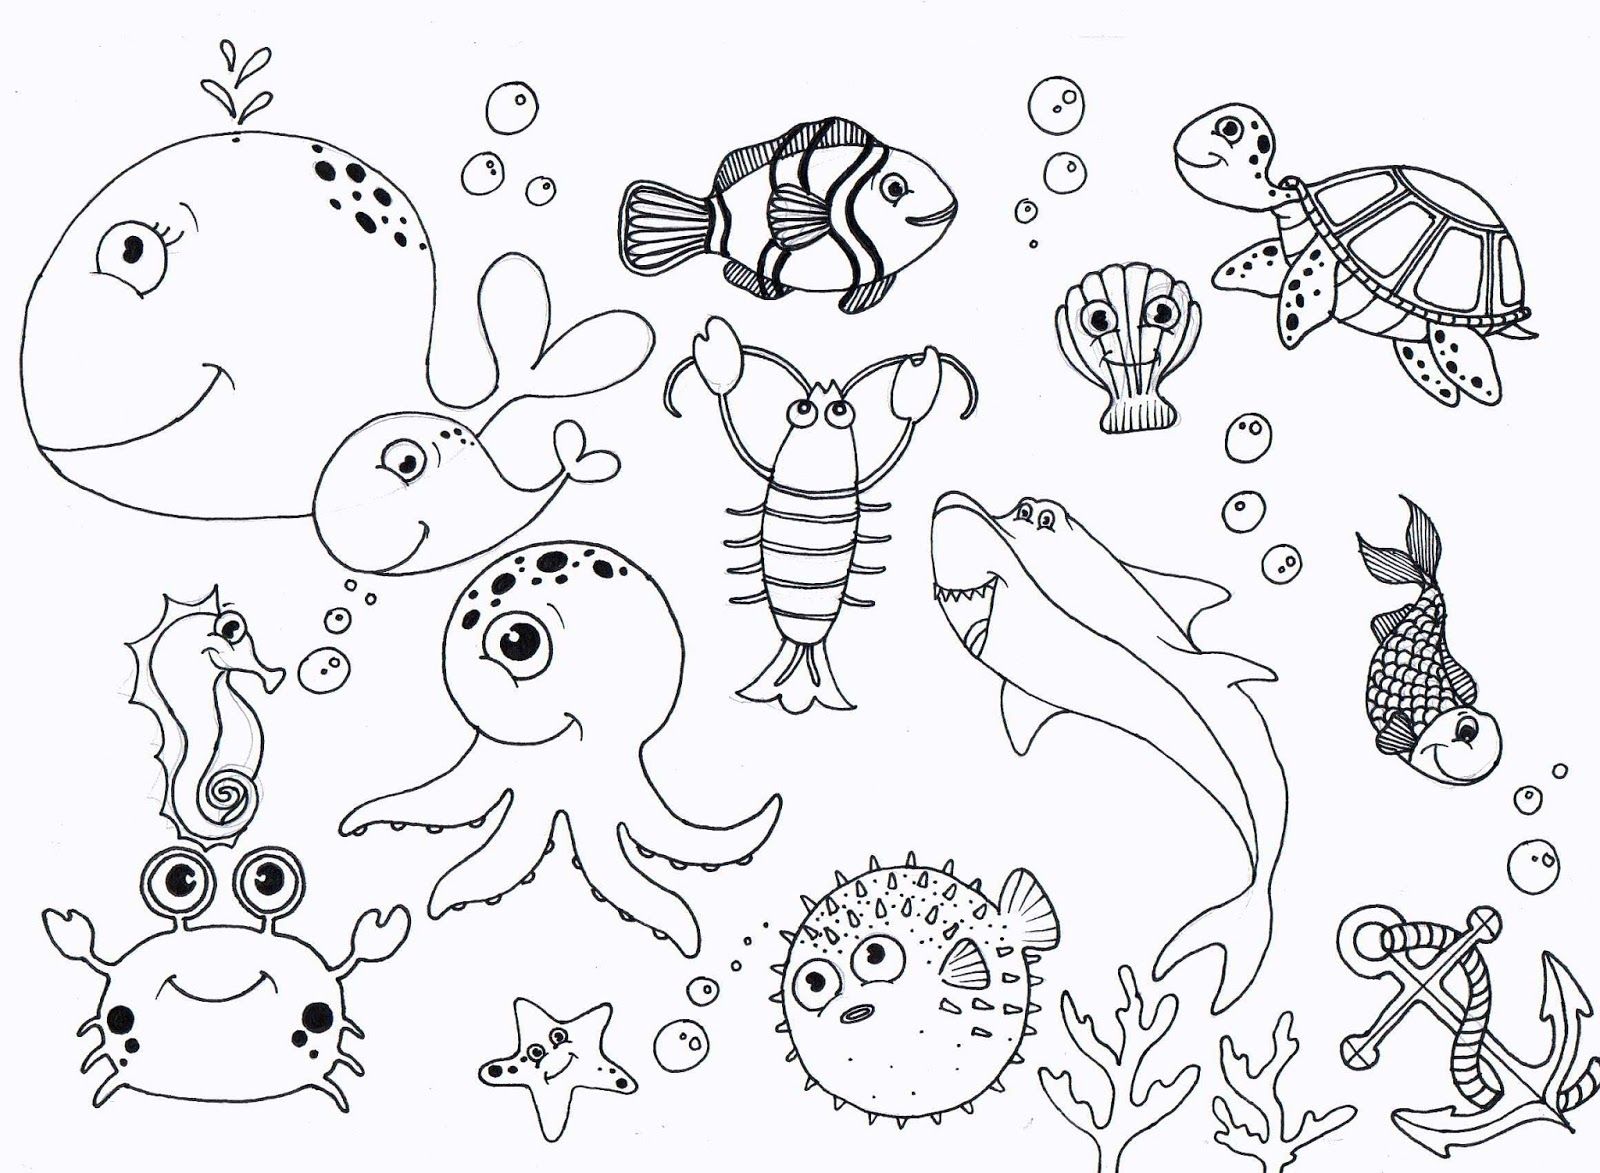 Les animaux nagent sous l'eau des mers et des océans